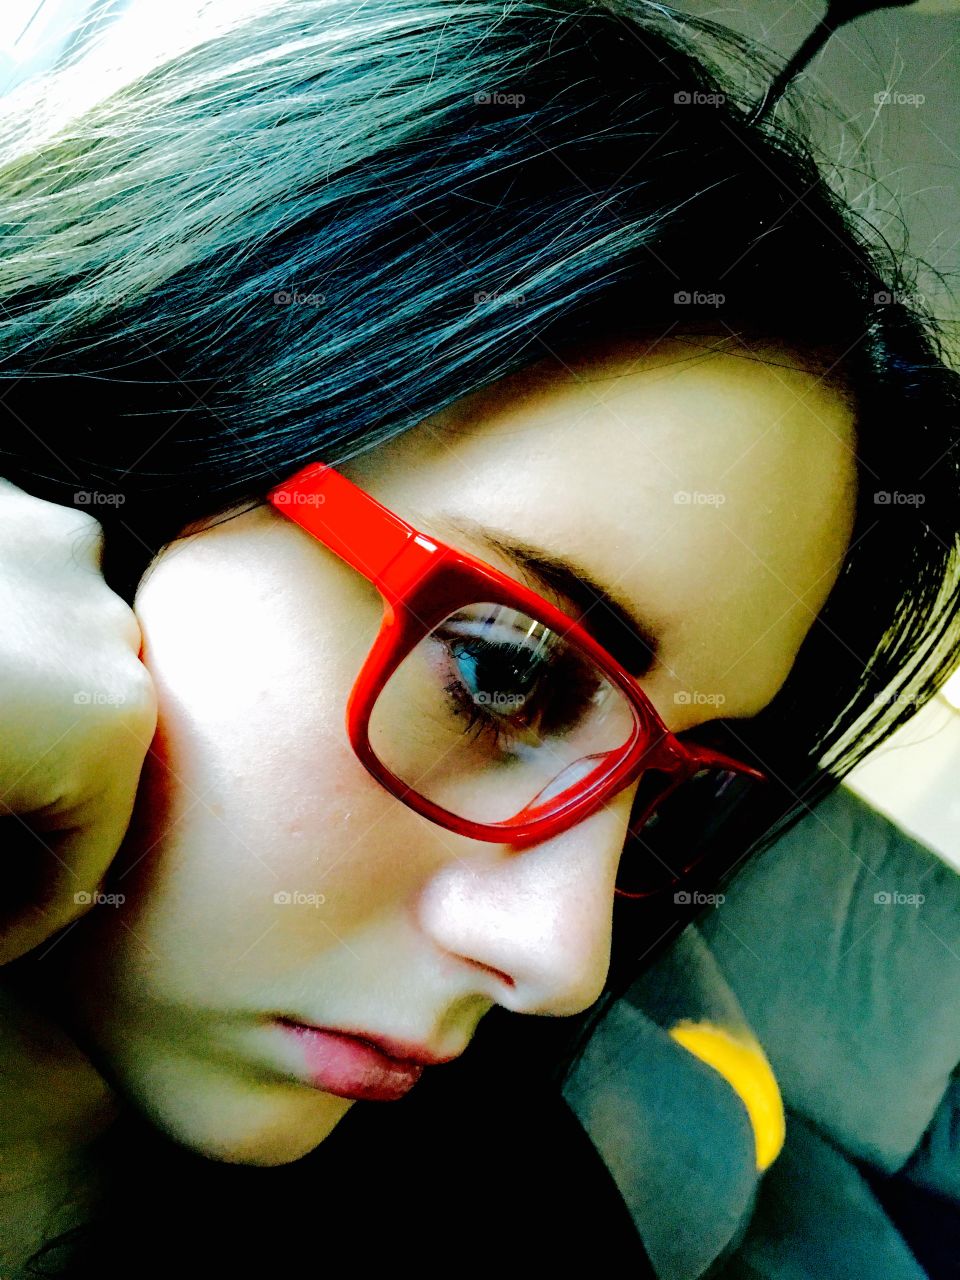 Girl whit the red eyeglasses 